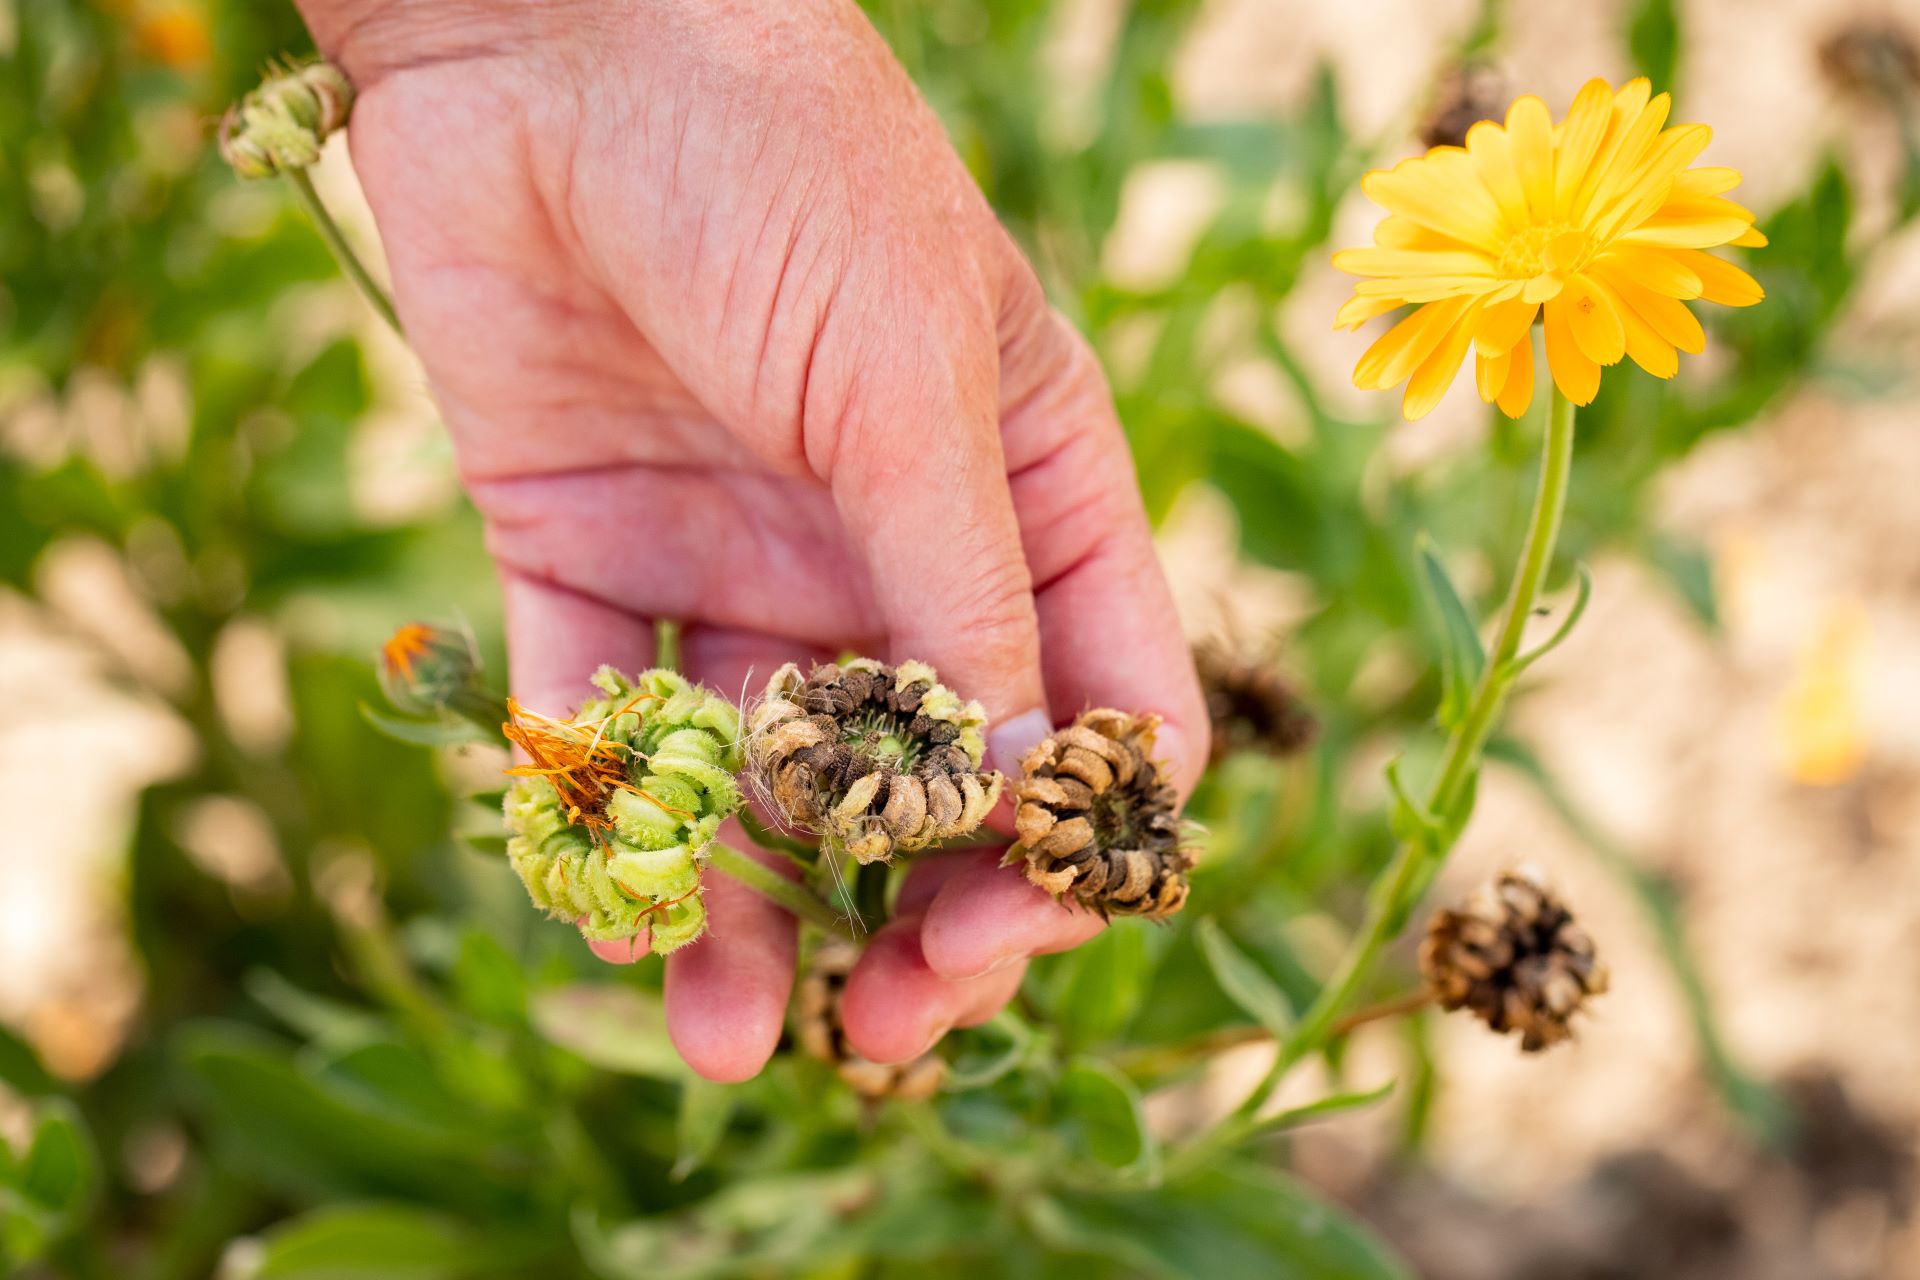 Hand hält drei Samenkapseln einer Ringelblume, eine davon erntereif getrocknet, eine schon halbtrocken, eine weitere noch grün. Im Hintergrund gelbe Ringelblumenblüte sowie Blattwerk in Unschärfe.